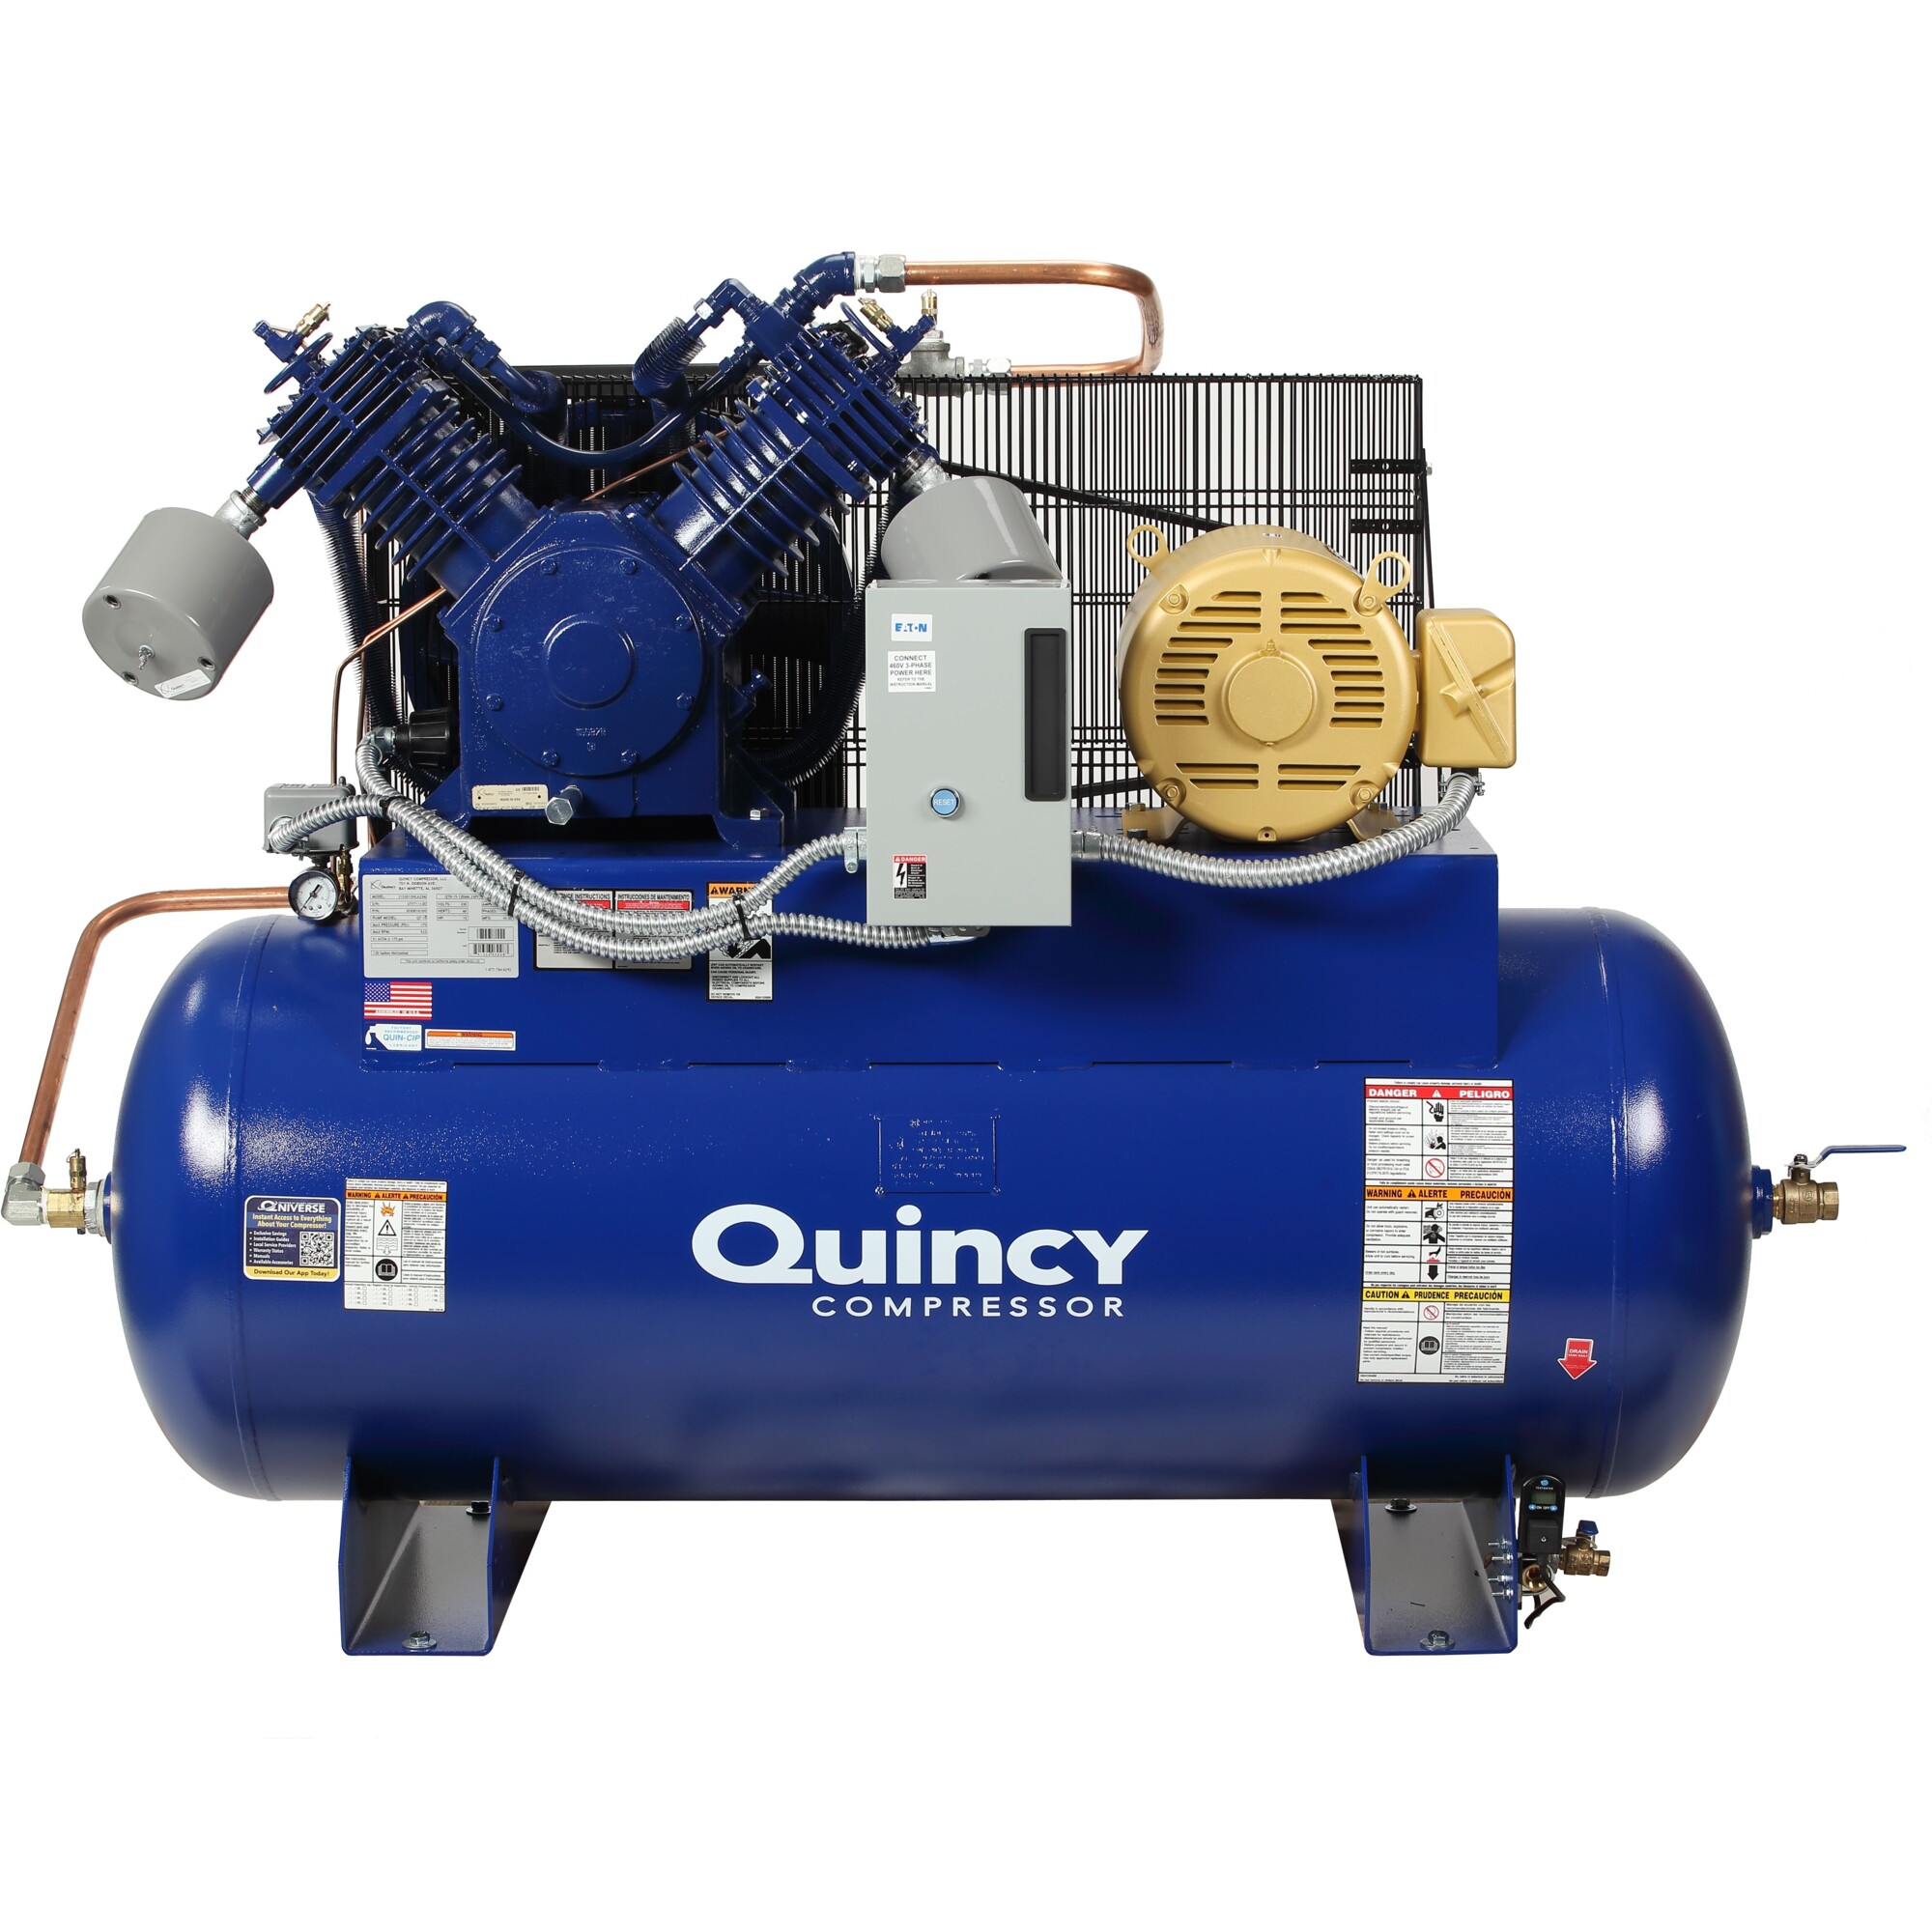 Quincy Compressor, QT2 15H 120G 2Stg Air Compressor 200V 3ph HM, Horsepower 15 HP, Air Tank Size 120 Gal, Volts 200 Model 4153D12HCA20M